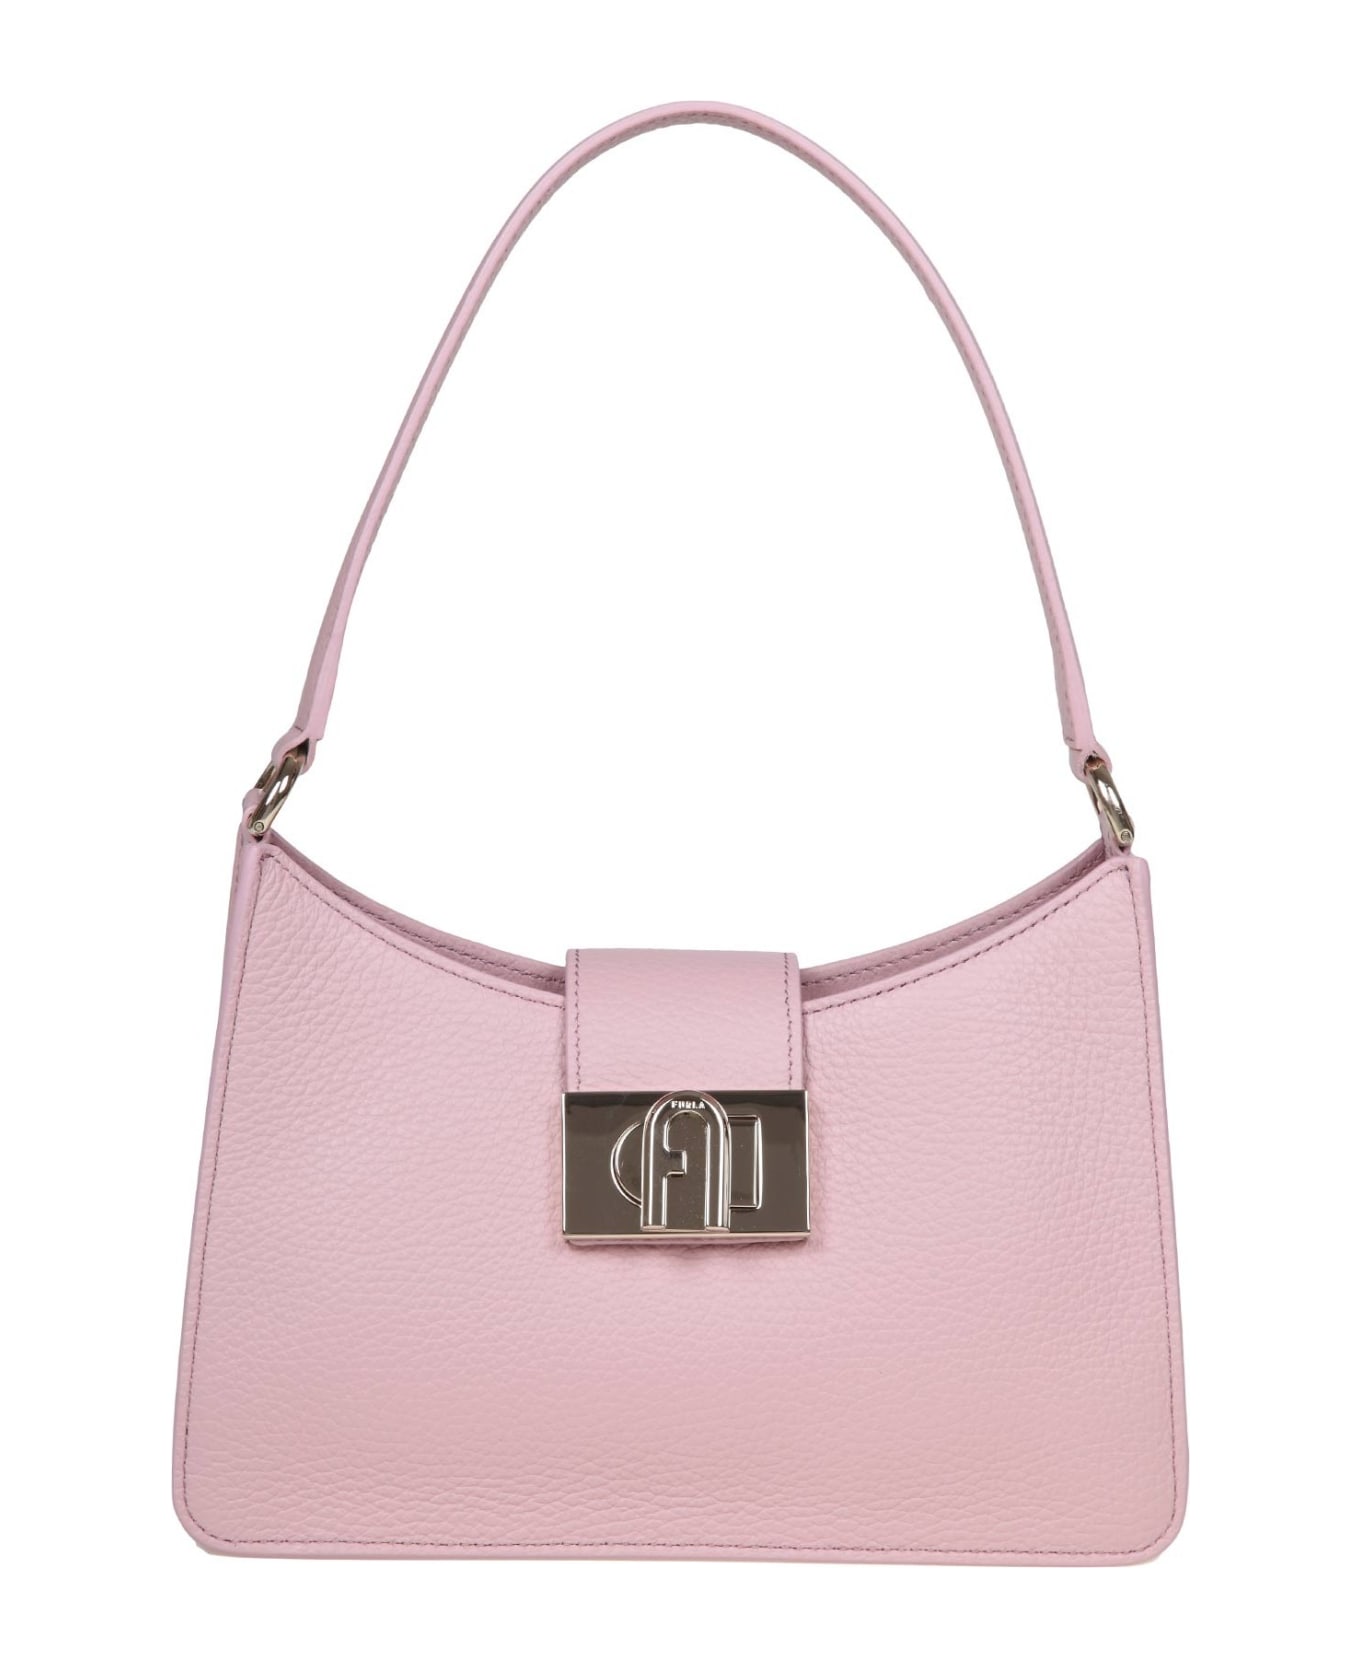 Furla 1927 S Shoulder Bag In Pink Soft Leather - Gold